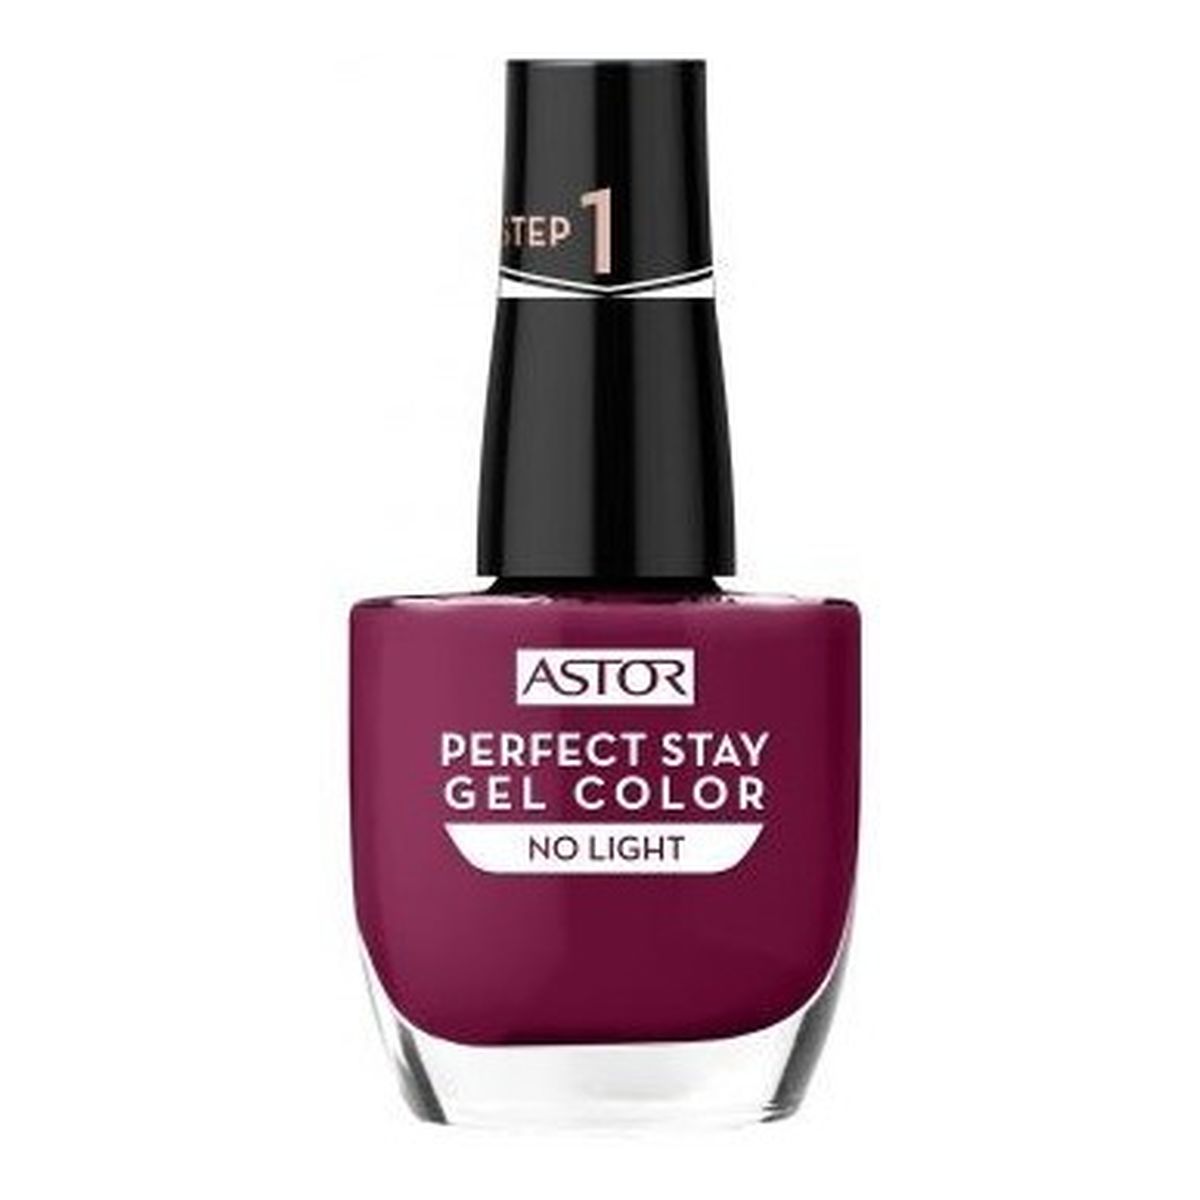 Astor Perfect Stay Gel Color Żelowy lakier do paznokci 12ml